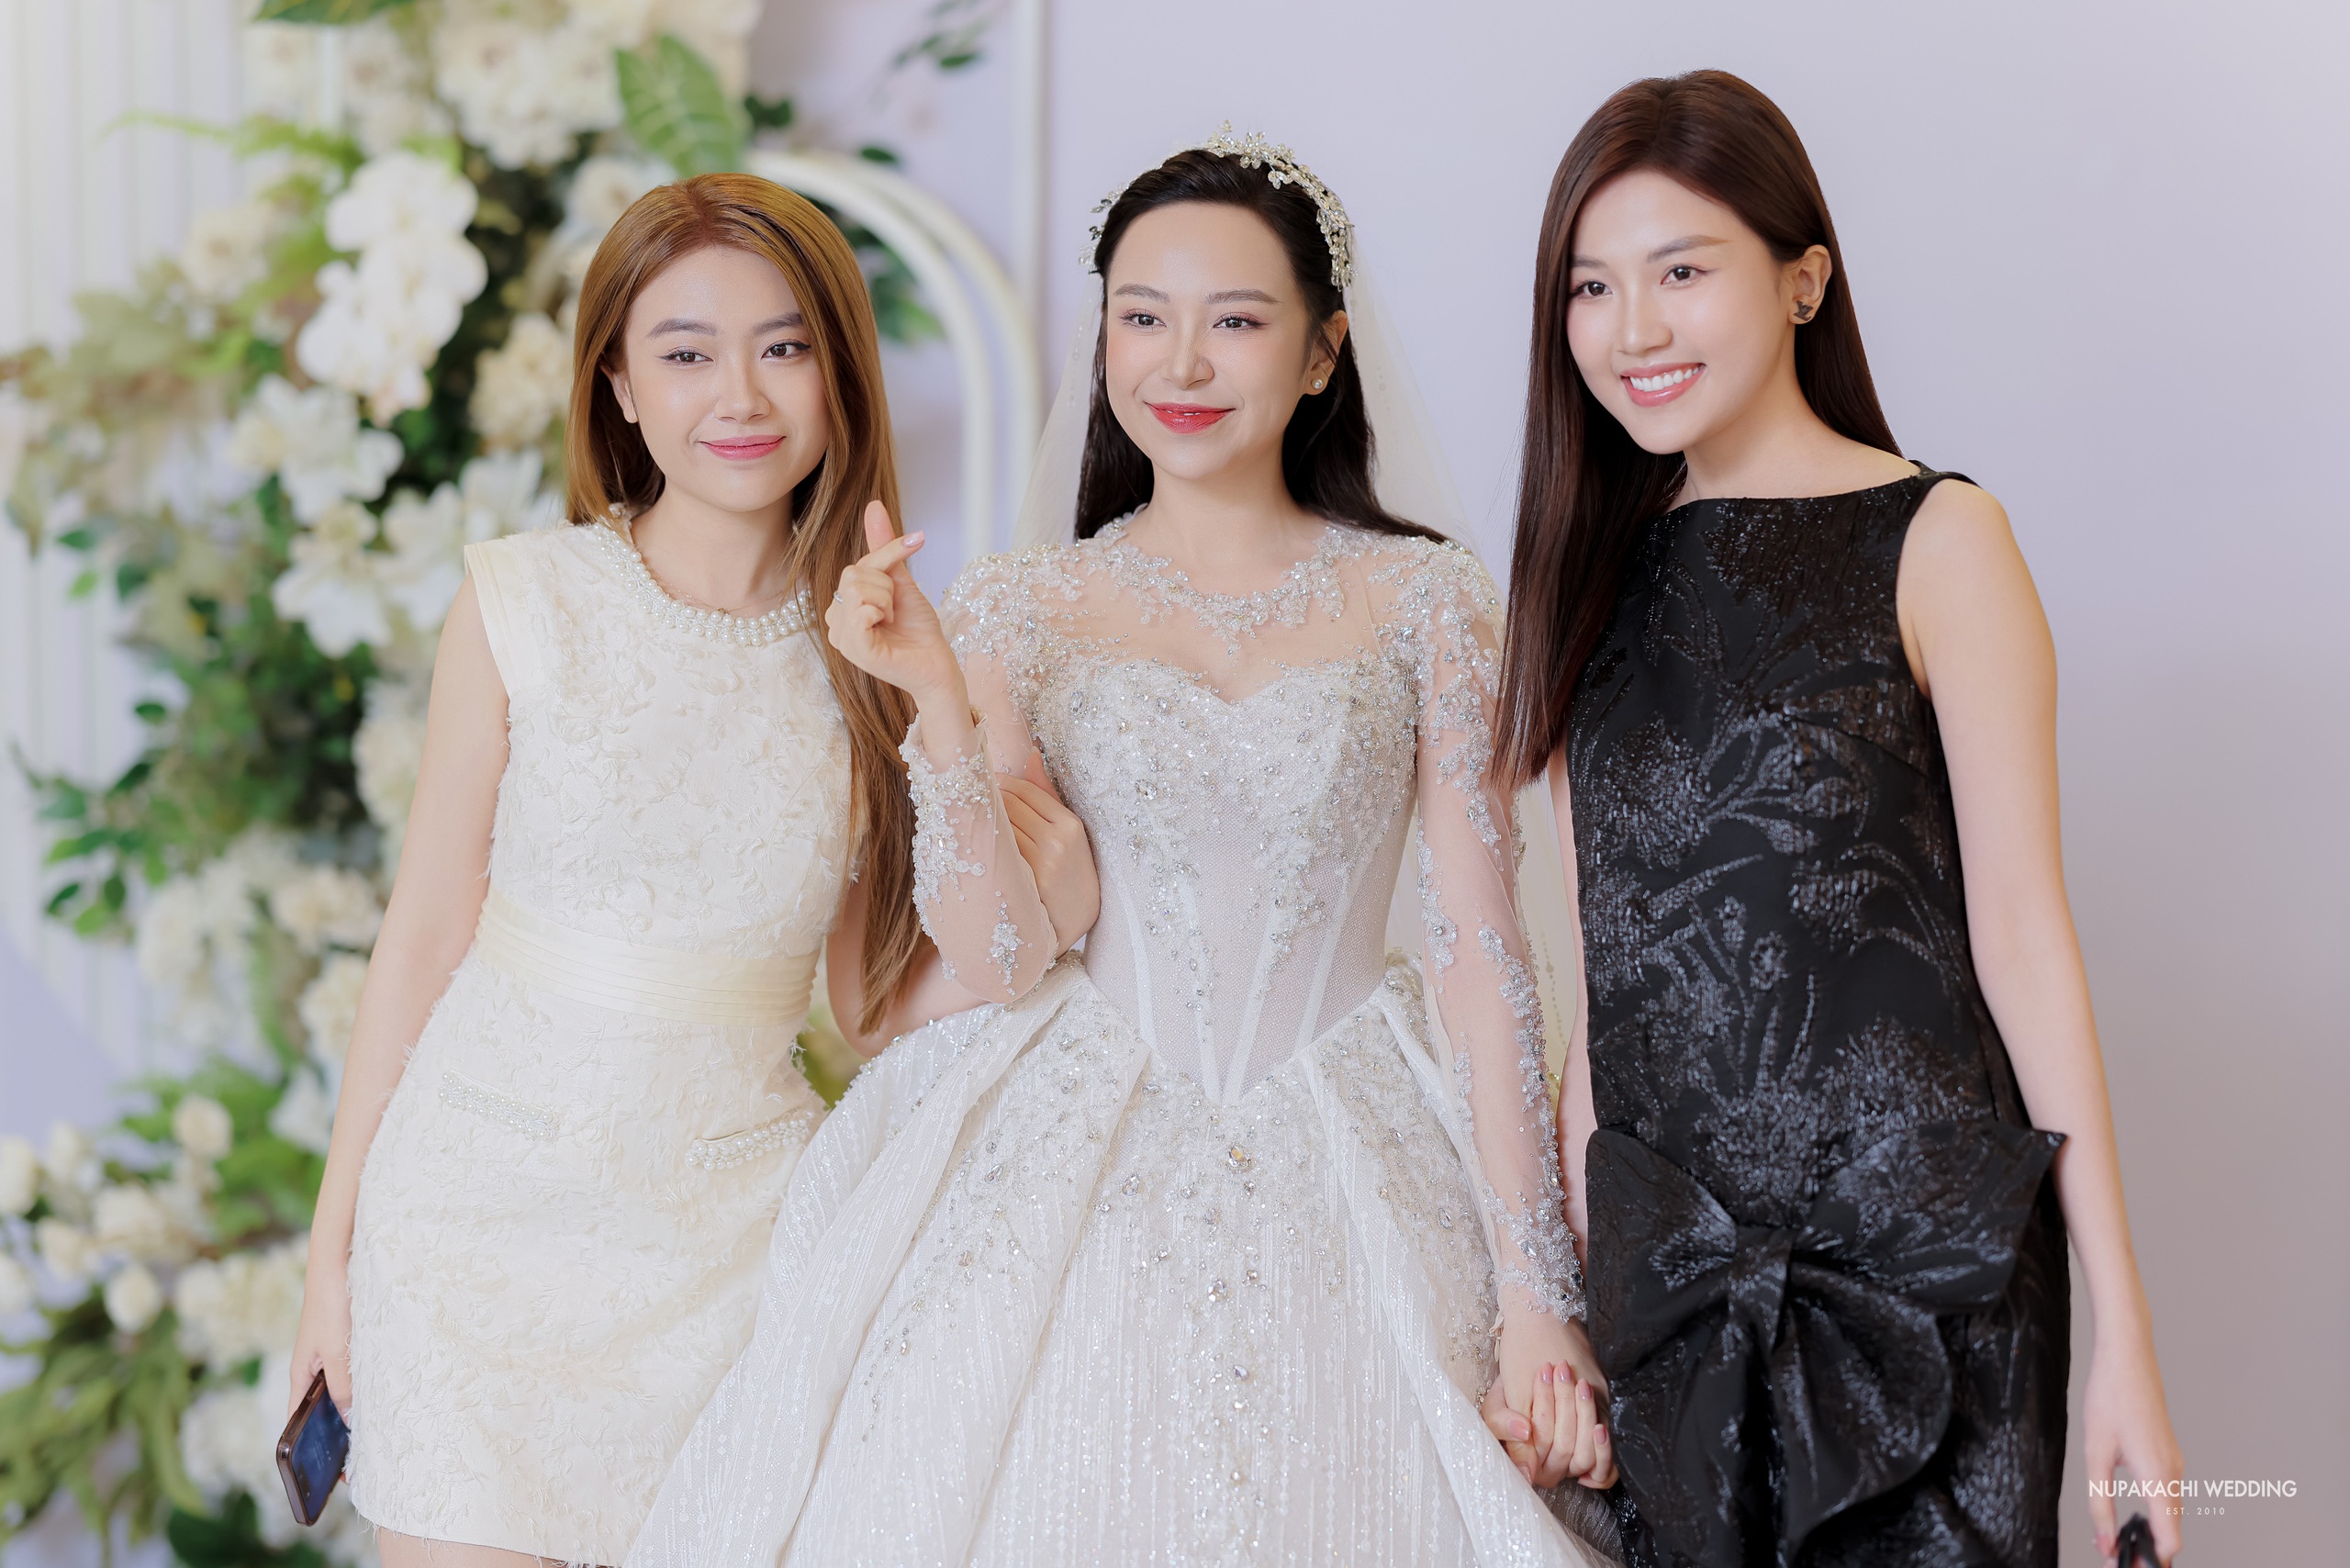 Hồng Diễm, Nhã Phương rạng rỡ đến mừng cưới Kim Oanh 'Những cô gái trong thành phố'- Ảnh 6.